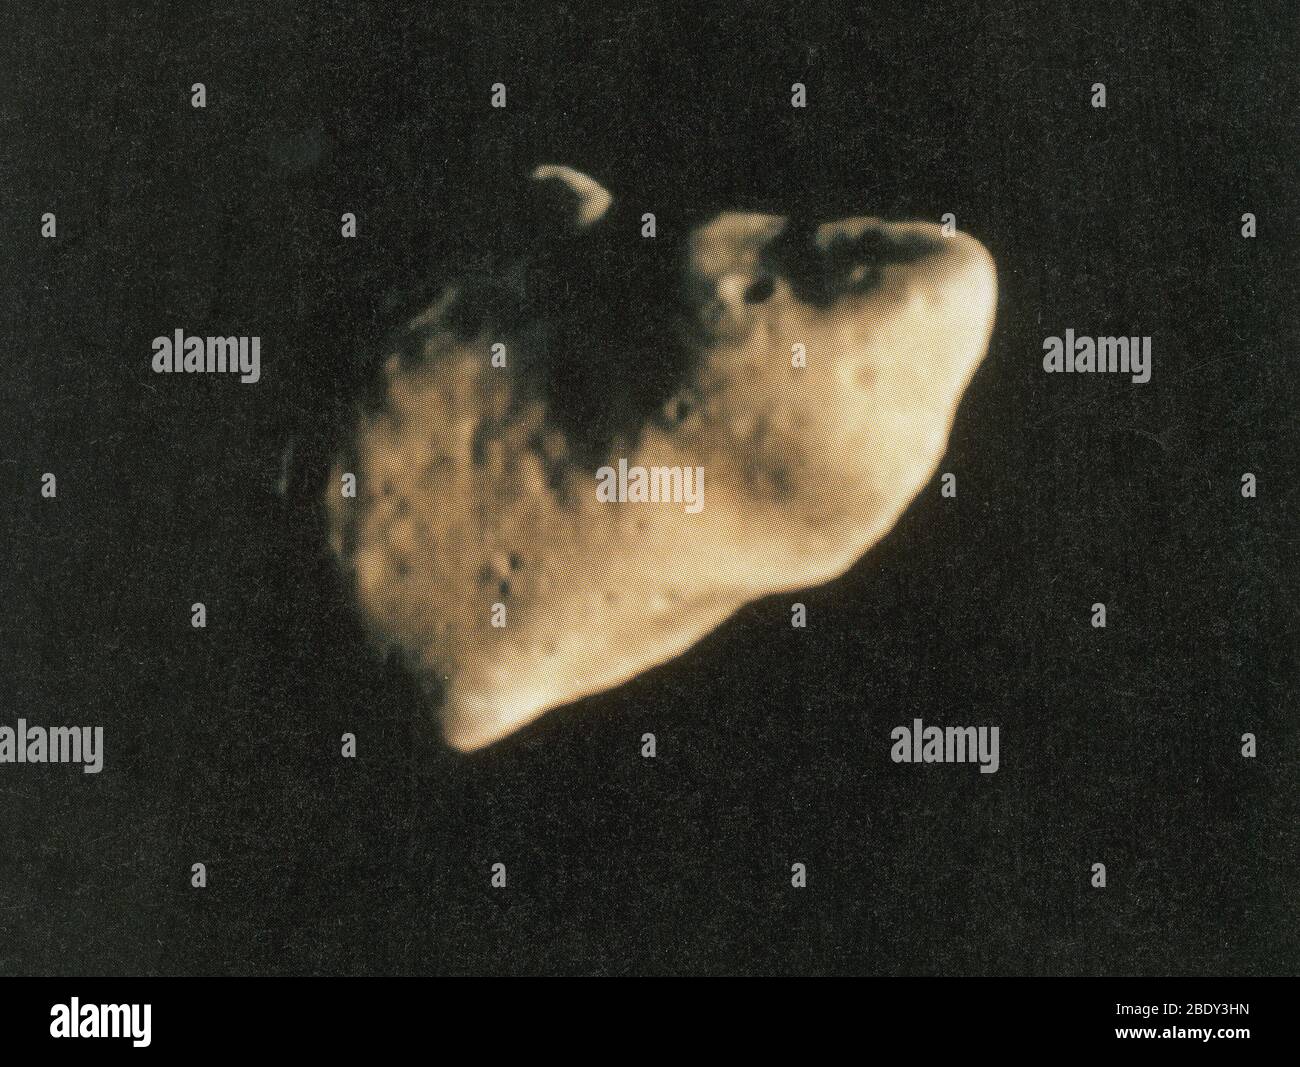 Gaspra, asteroide tipo S, 1991 Foto Stock